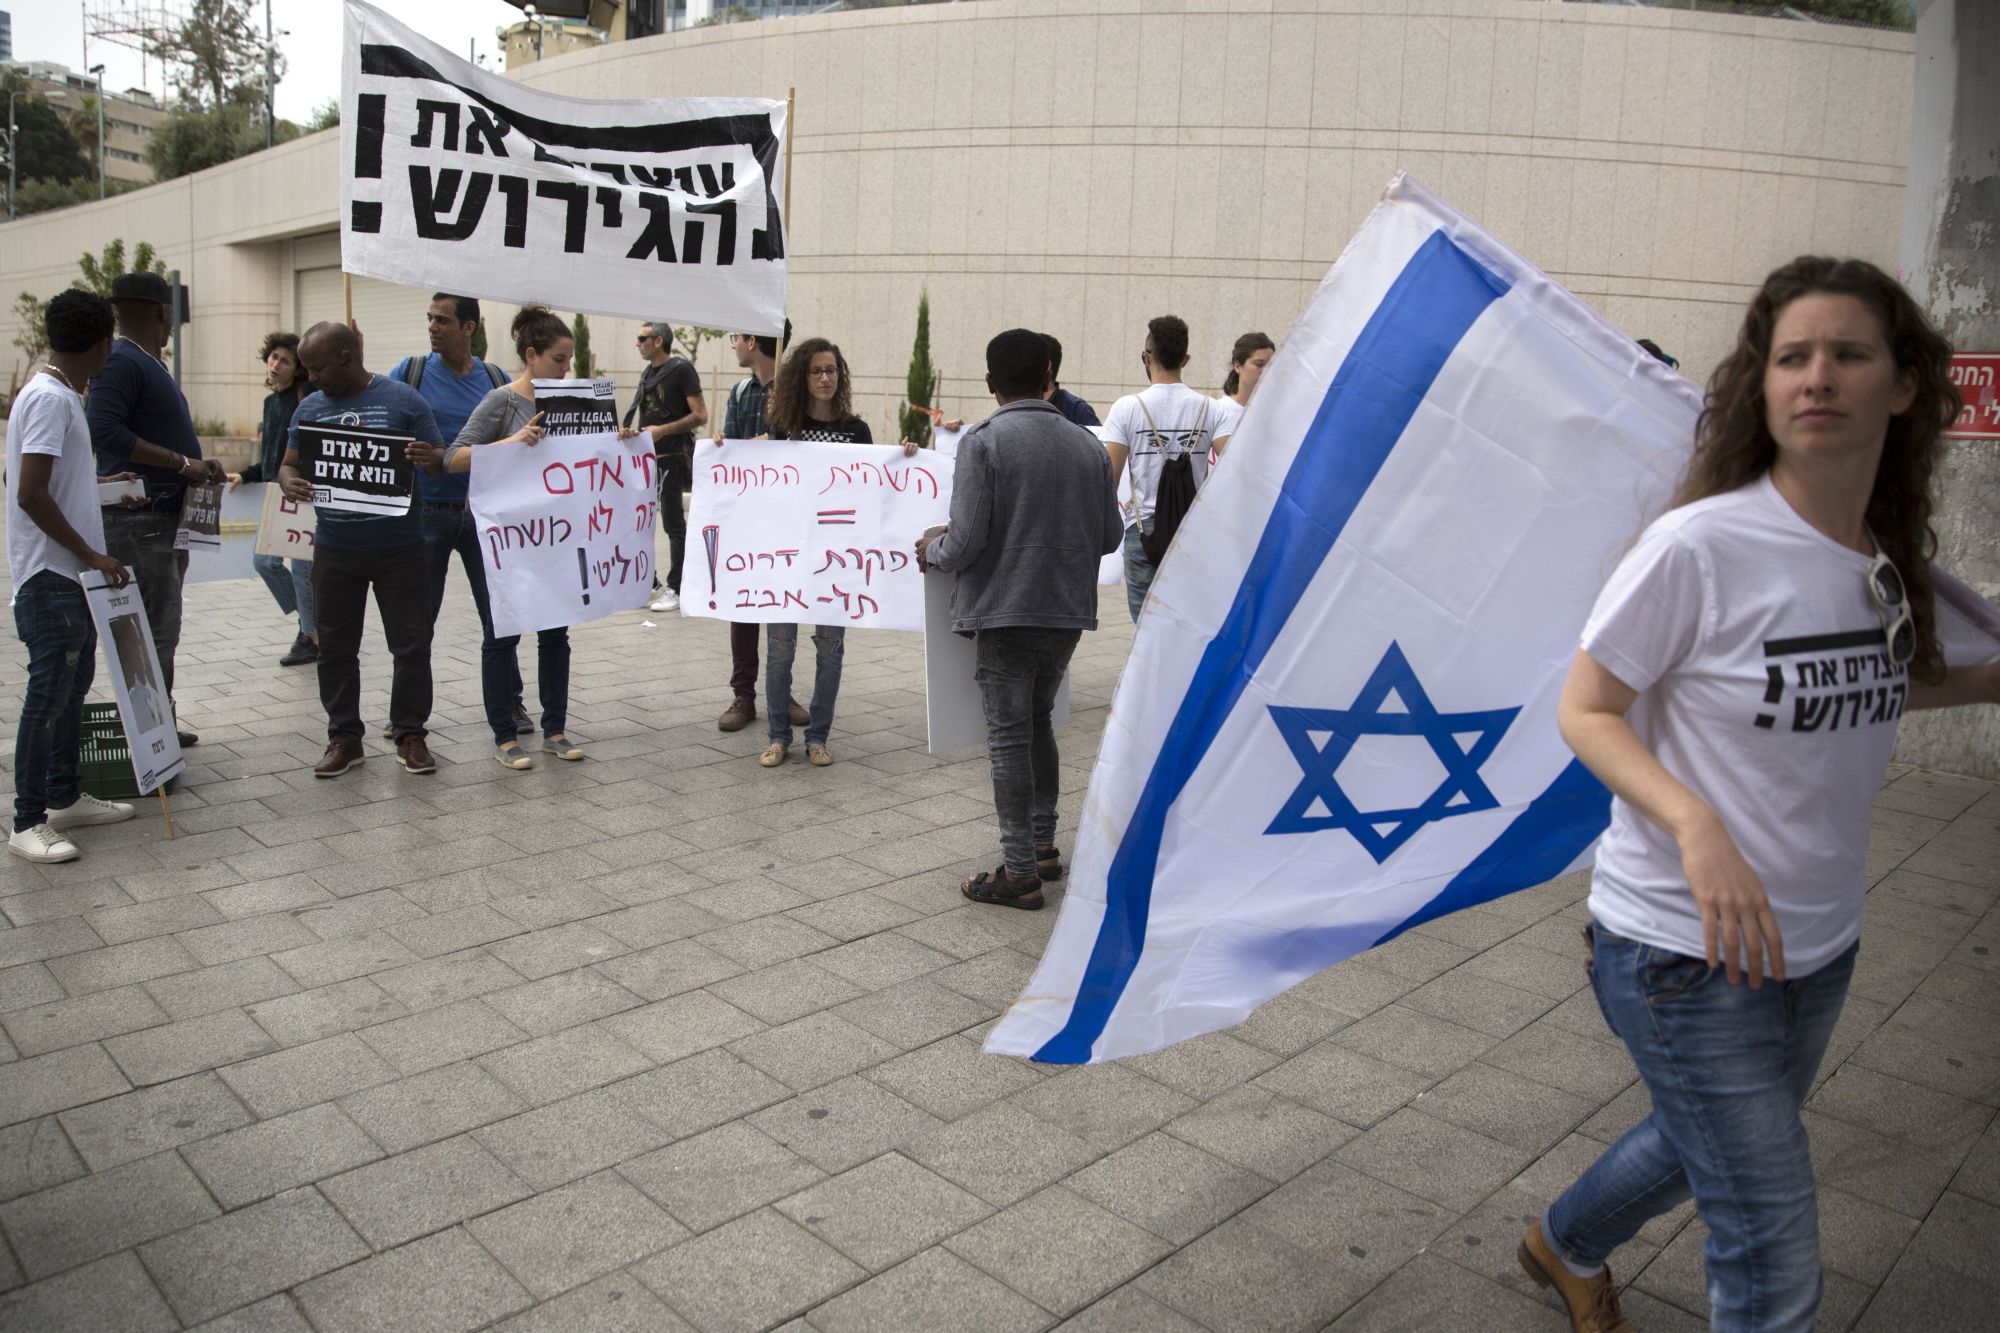 Hagyják abba a deportálást jelentésű héber felirattal tüntetnek afrikai migránsok kitoloncolása ellen Tel-Avivban 2018. április 3-án. Az előző napon Benjámin Netanjahu izraeli miniszterelnök bejelentette, hogy Izrael eláll az afrikai illegális bevándorlók kitoloncolásától, majd azt is, hogy felfüggeszti az ENSZ Menekültügyi Főbiztosságával (UNHCR) ugyanaznap megkötött megállapodásának végrehajtását. (MTI/AP/Sebastian Scheiner)